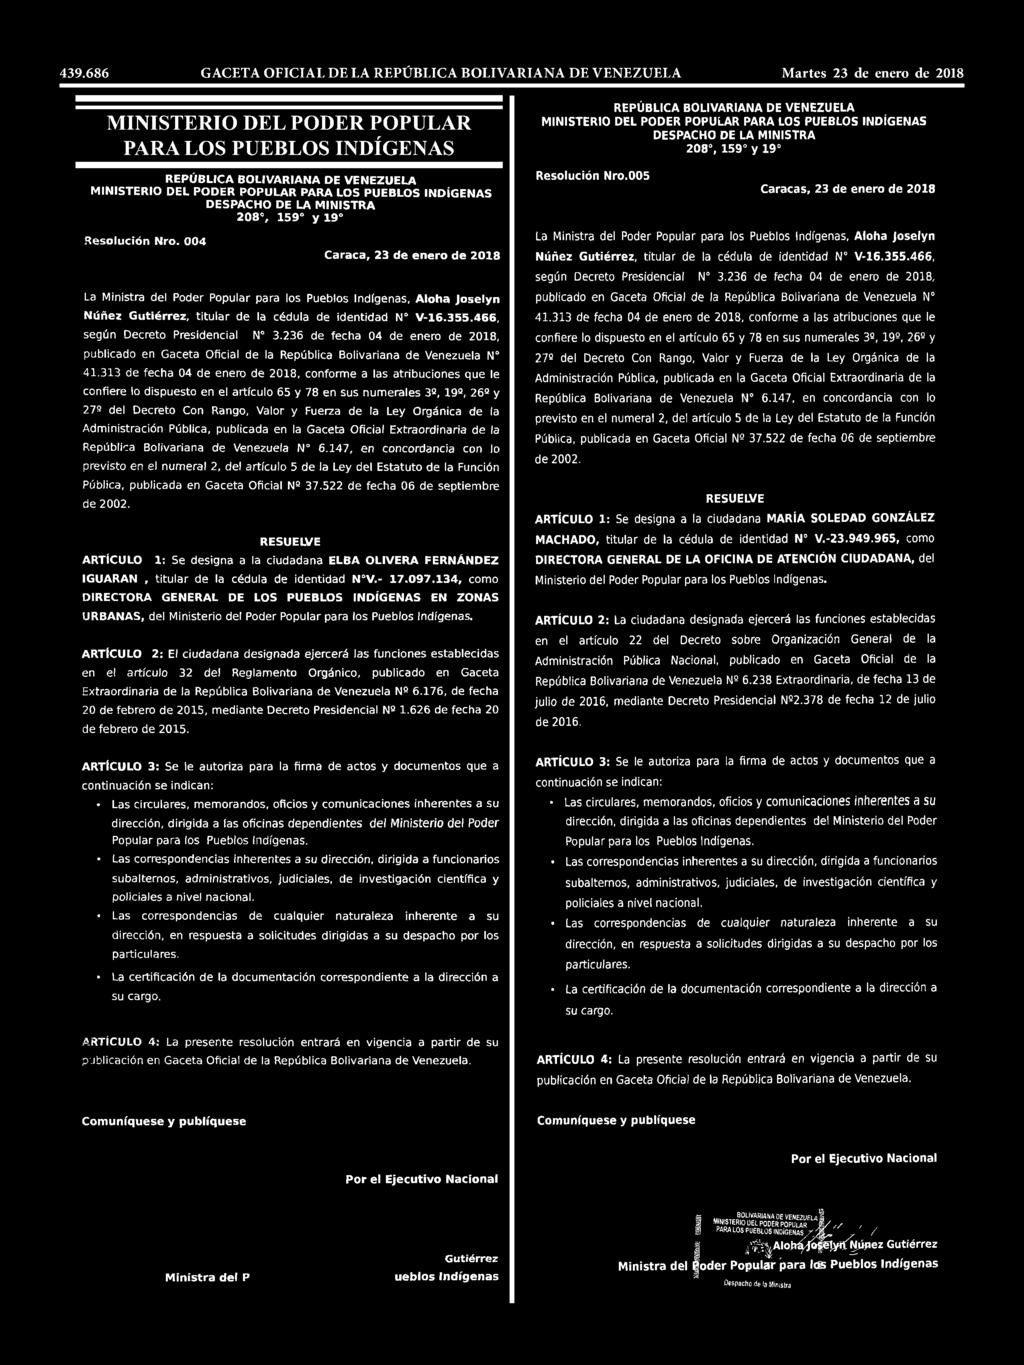 466, según Decreto Presidencial N 3.236 de fecha 04 de enero de 2018, publicado en Gaceta Oficial de la República Bolivarlana de Venezuela N 41.